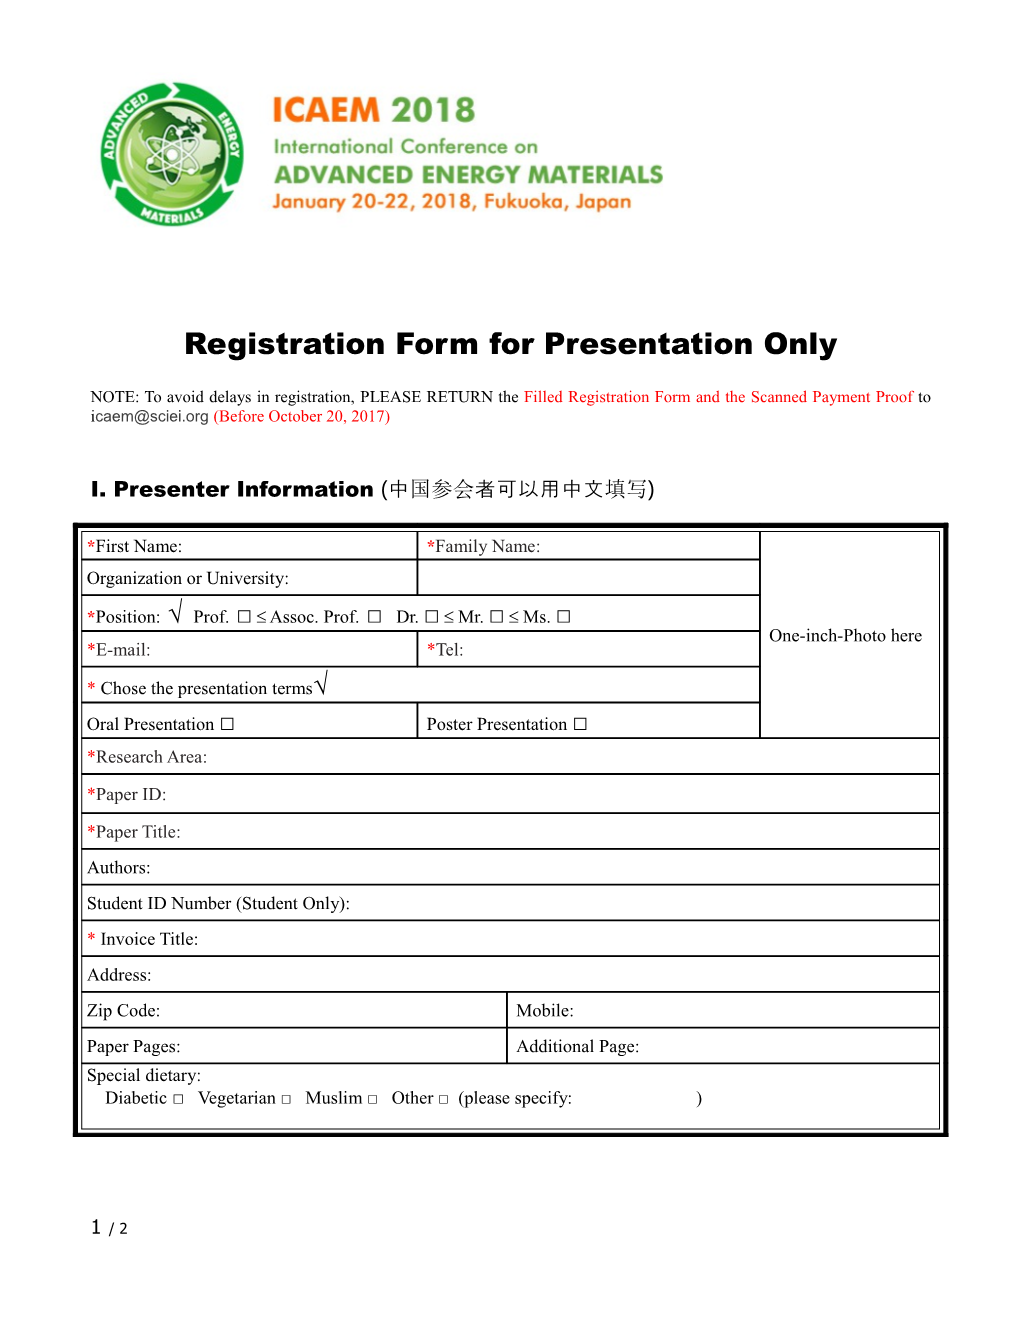 Registration Form for Presentation Only